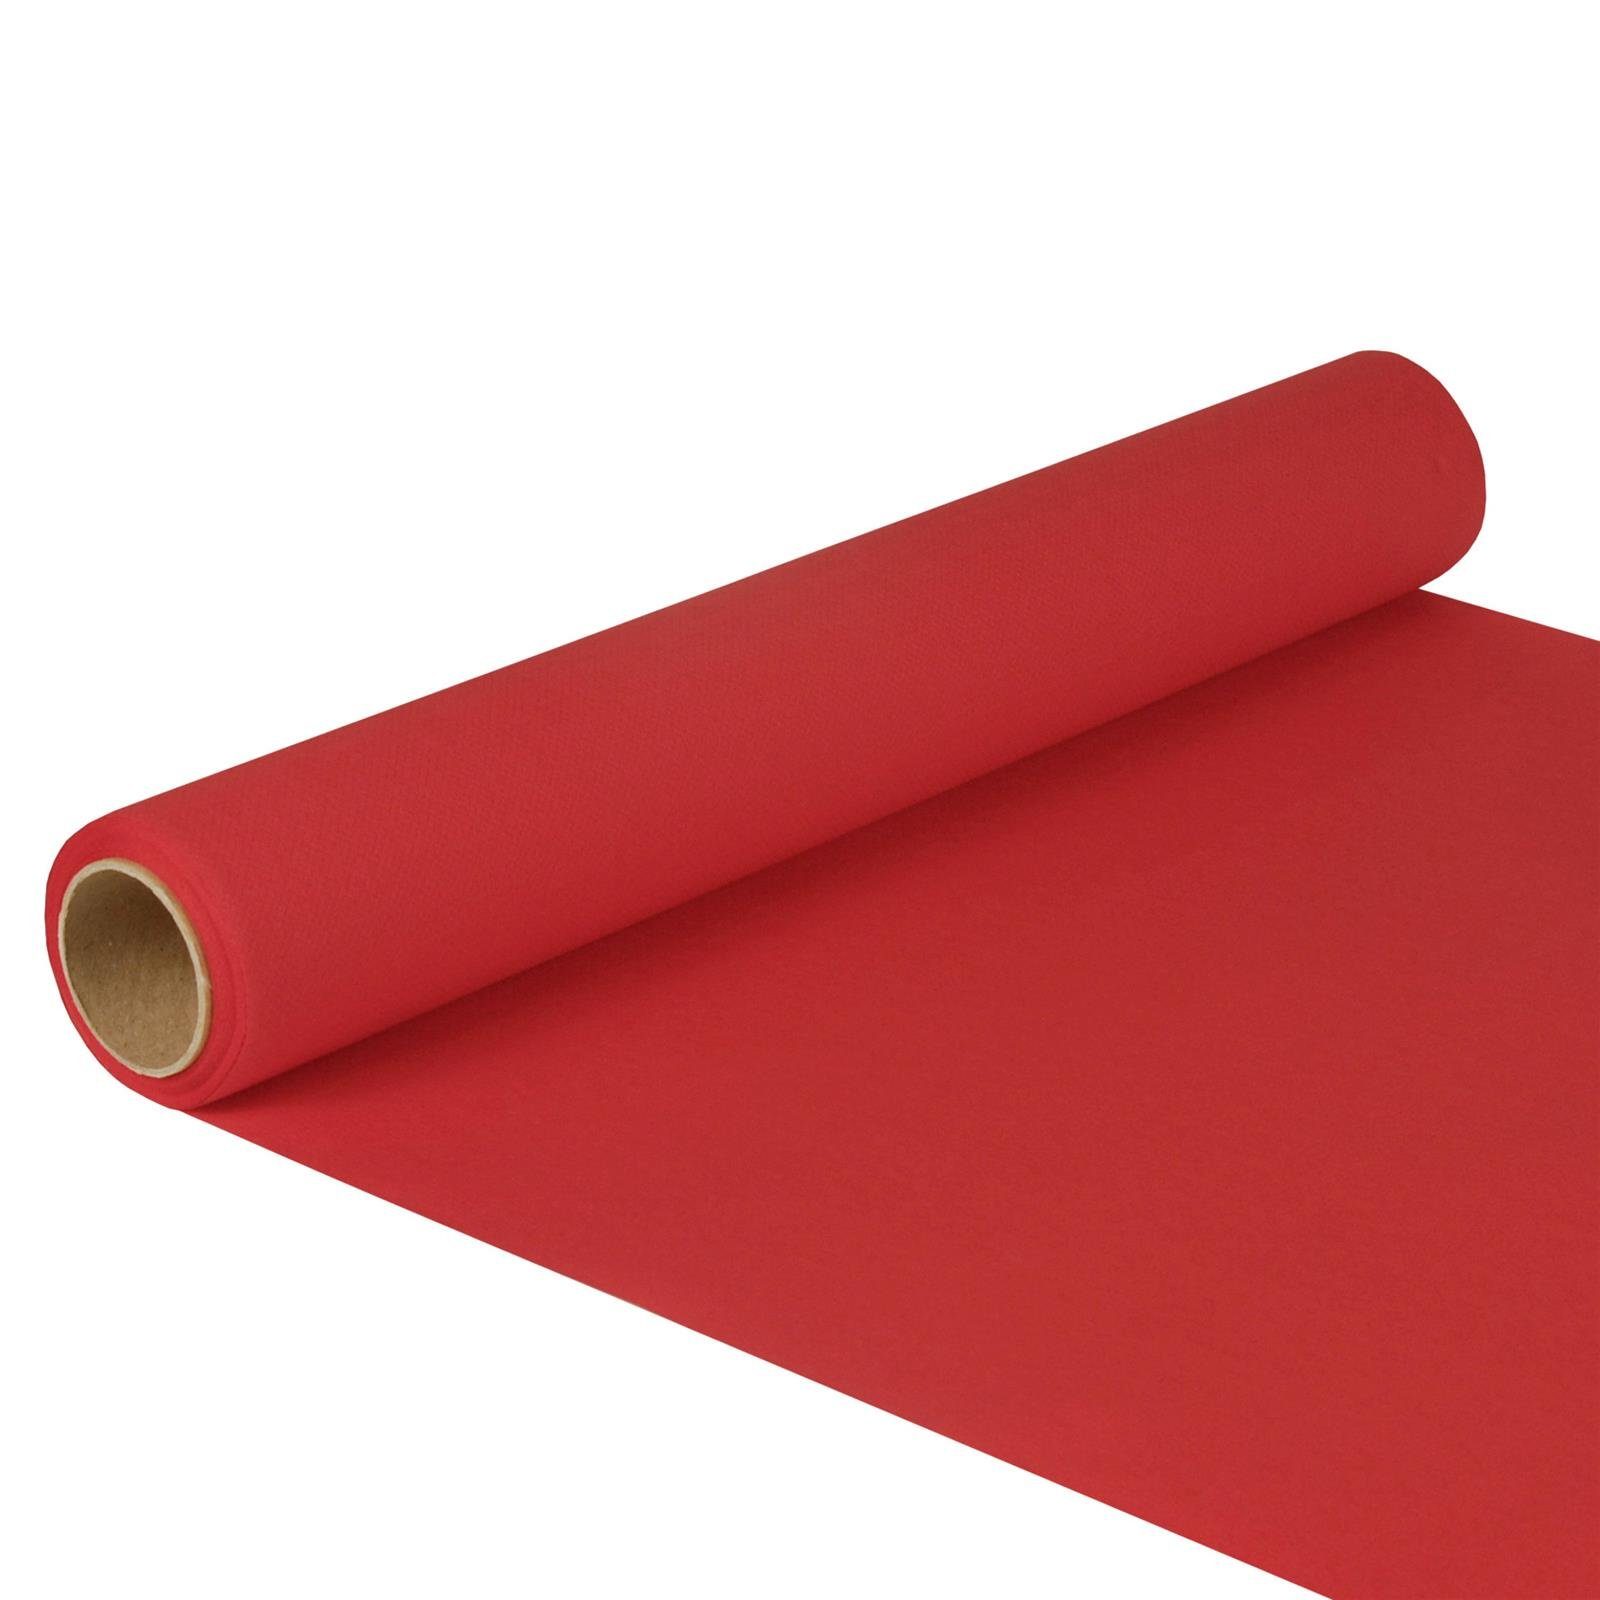 PAPSTAR Tischläufer Tischläufer Tissue ROYAL Collection 5 m x 40 cm rot